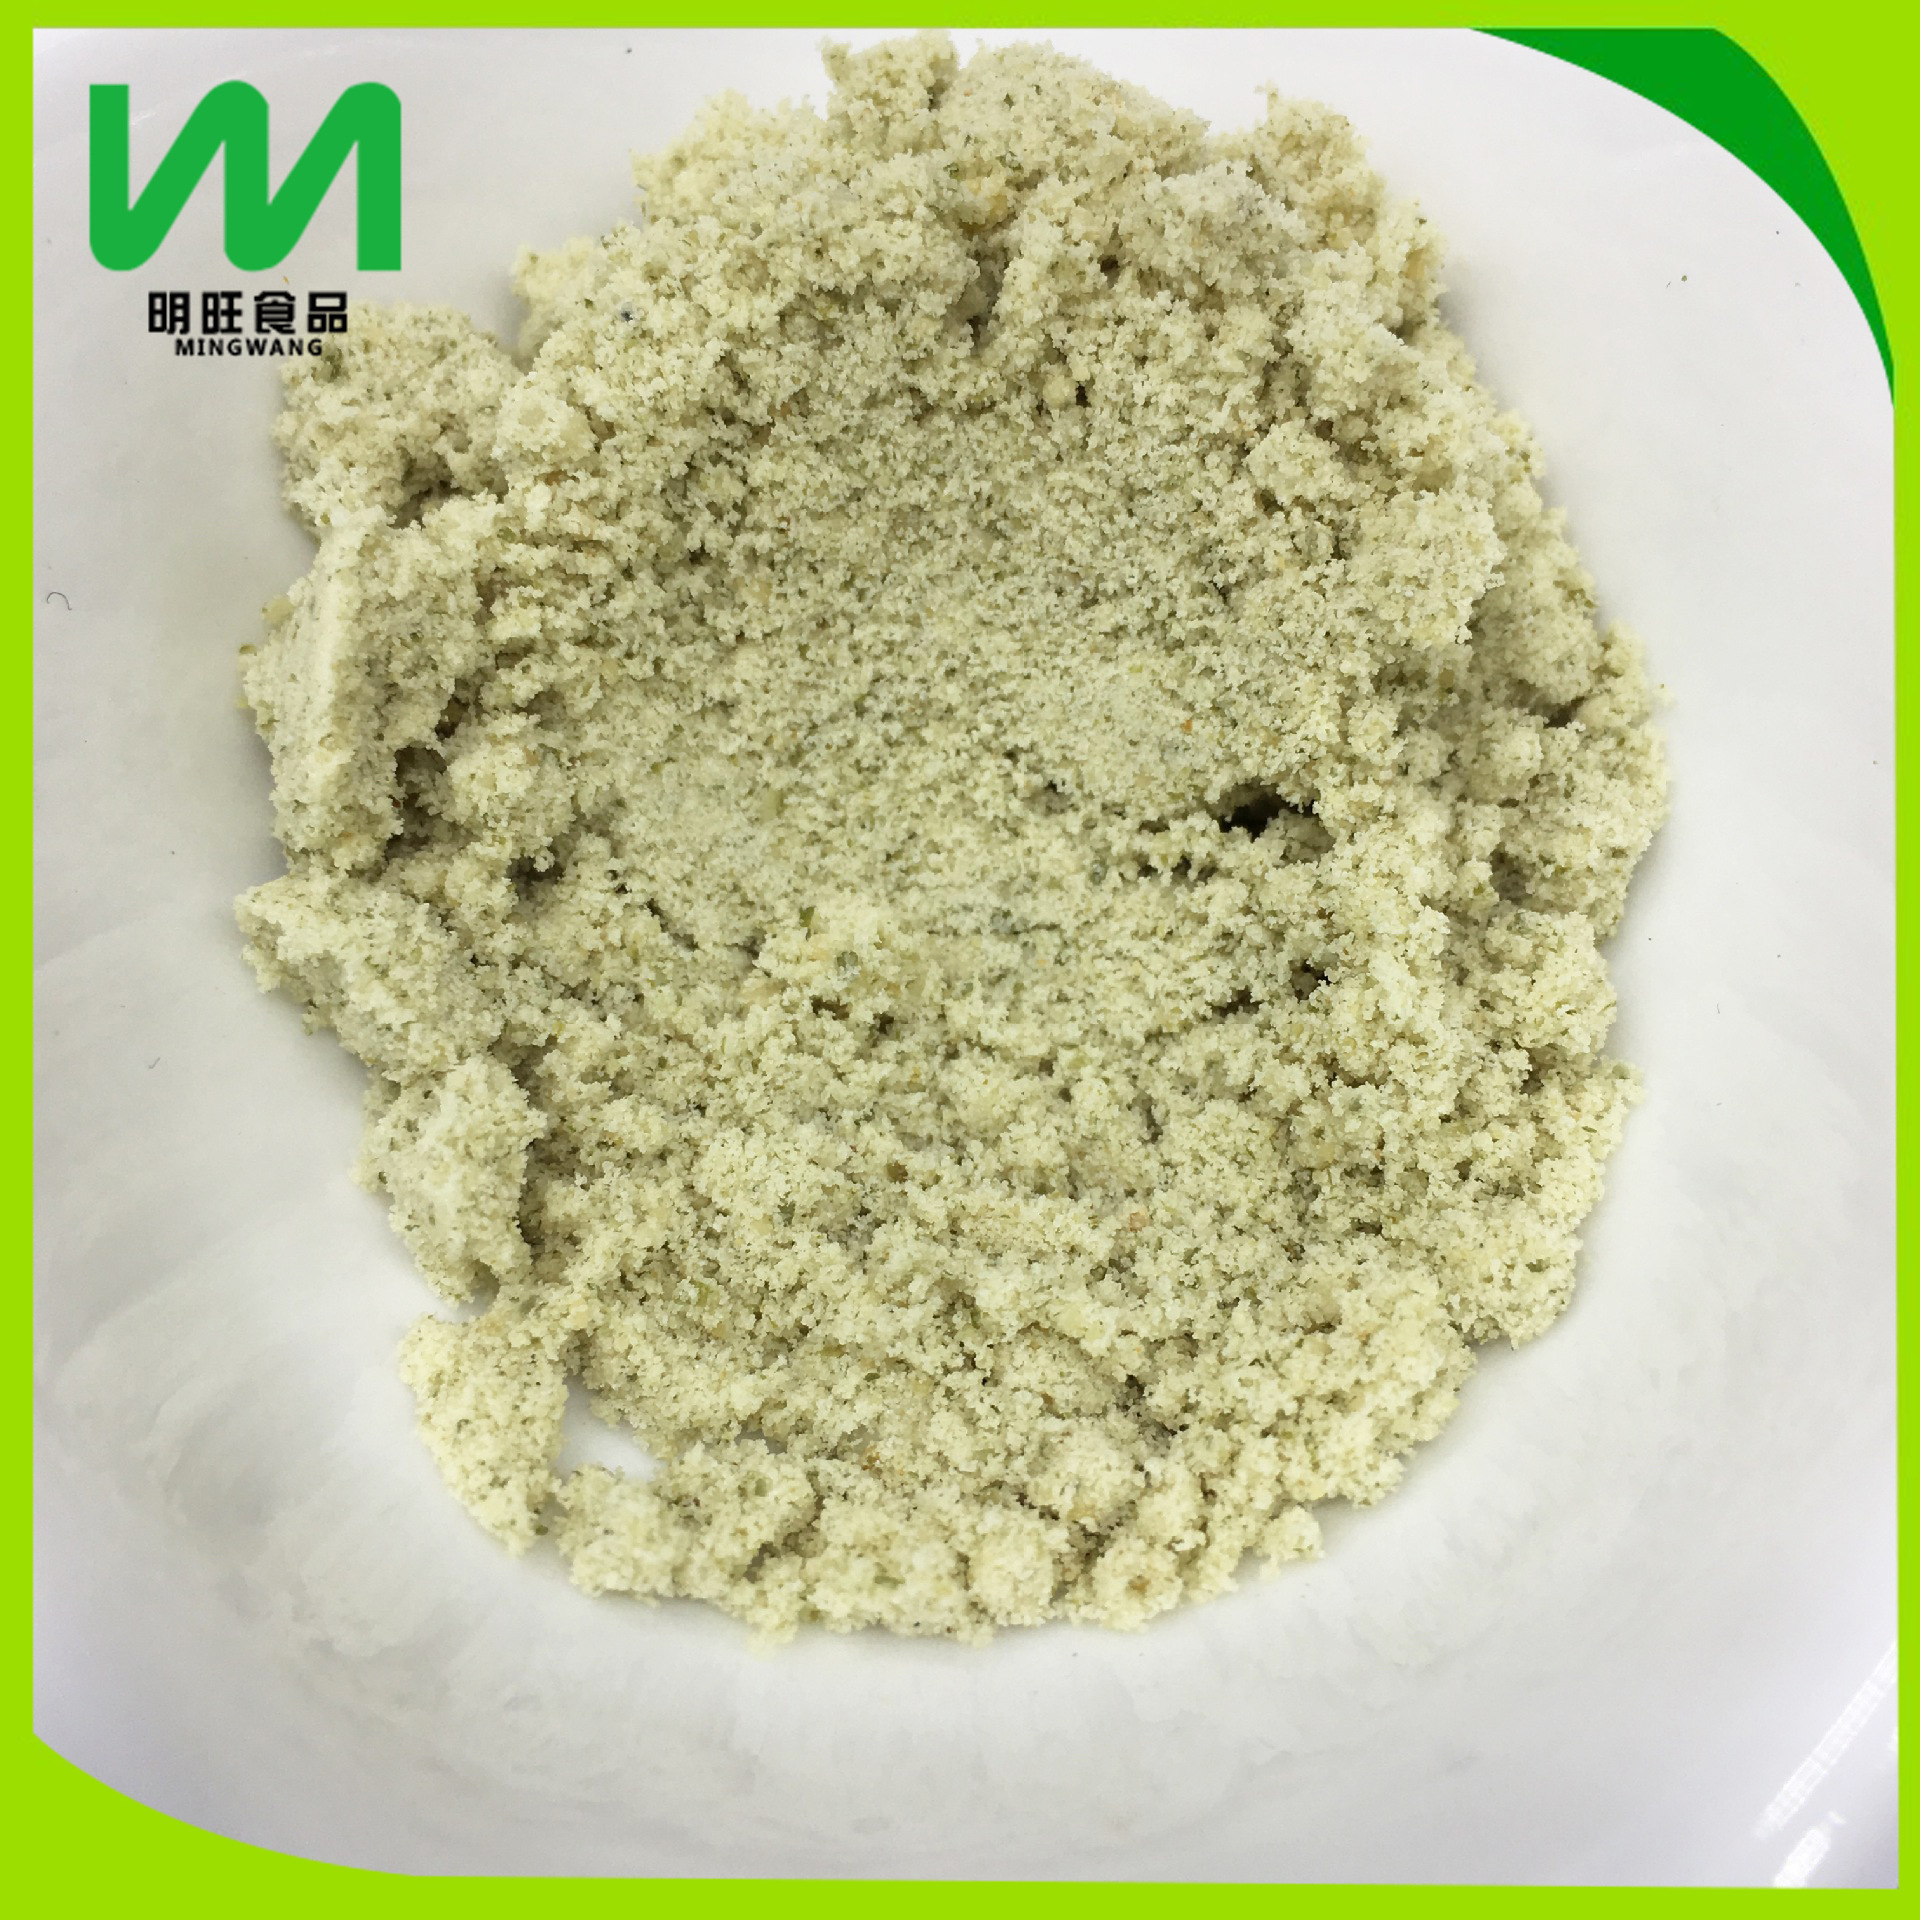 厂家批发供应南瓜籽粉适用于任何产品添加脱水蔬菜粉南瓜籽熟粉